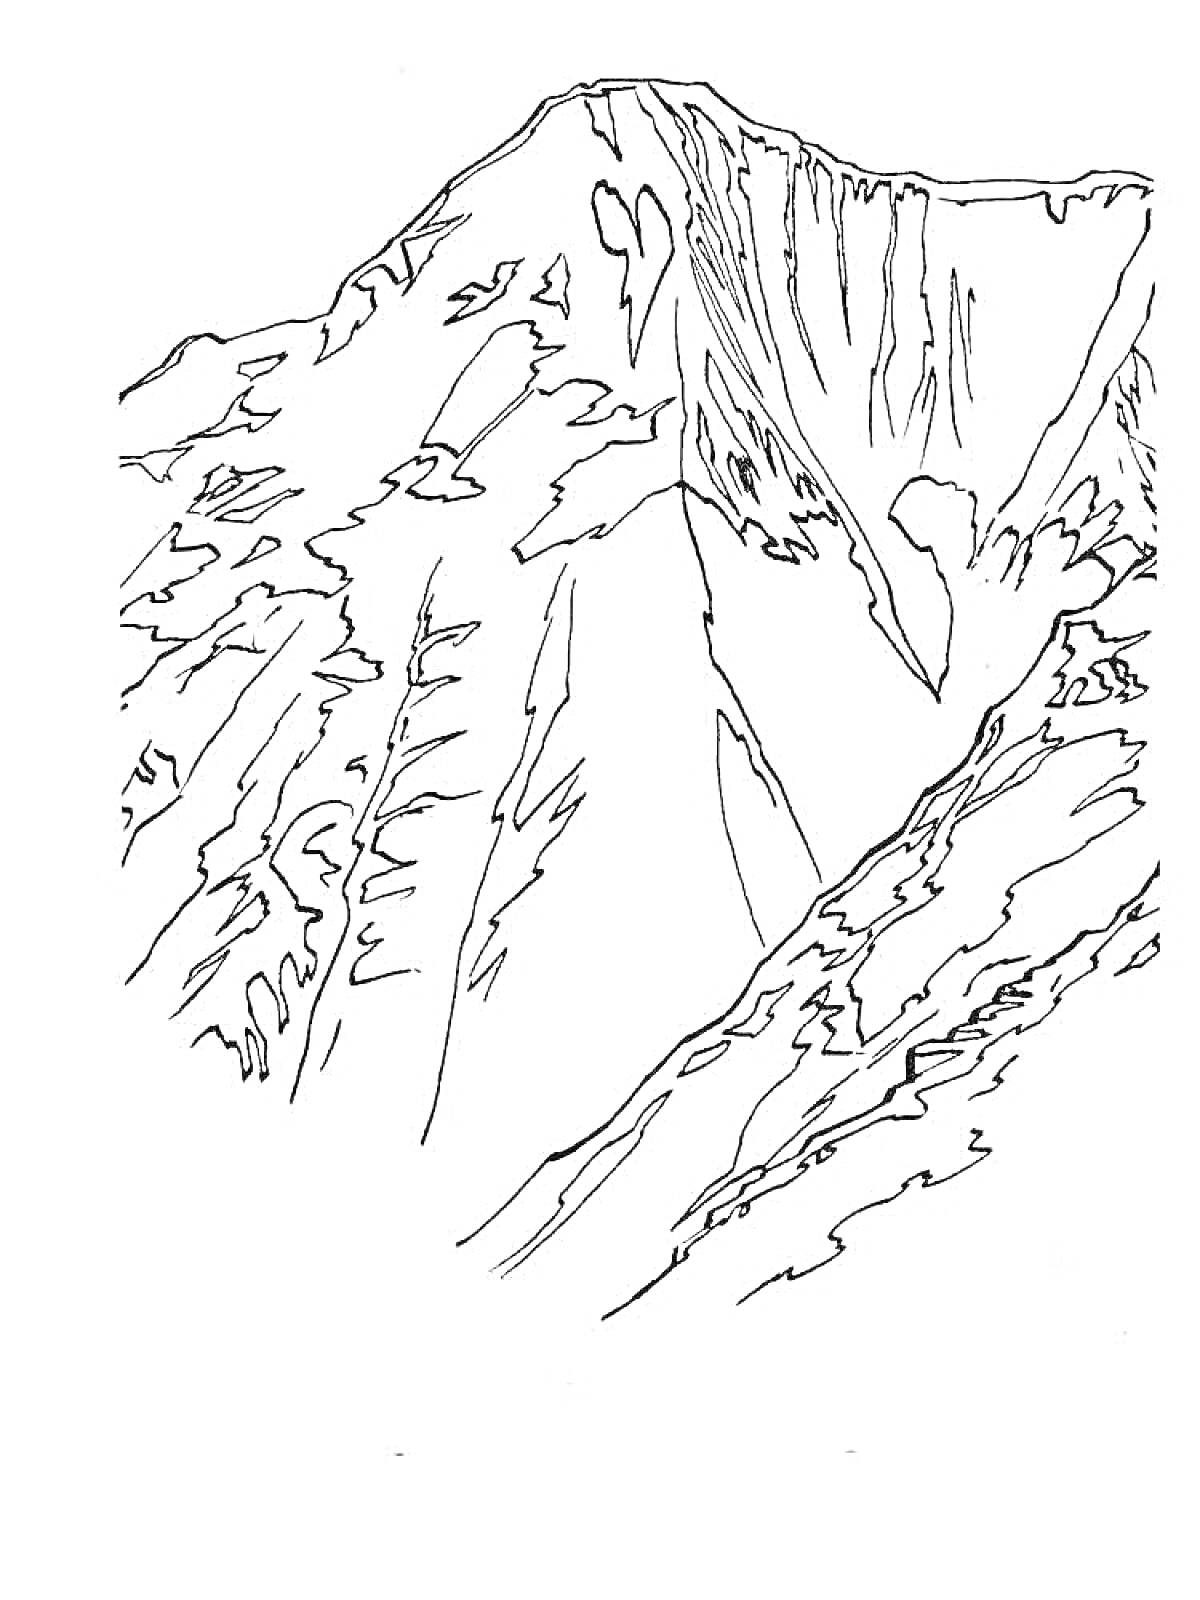 Раскраска Линии контура горы Эльбрус, изображающие вершину горы с окружающими её склонами и деталями рельефа.